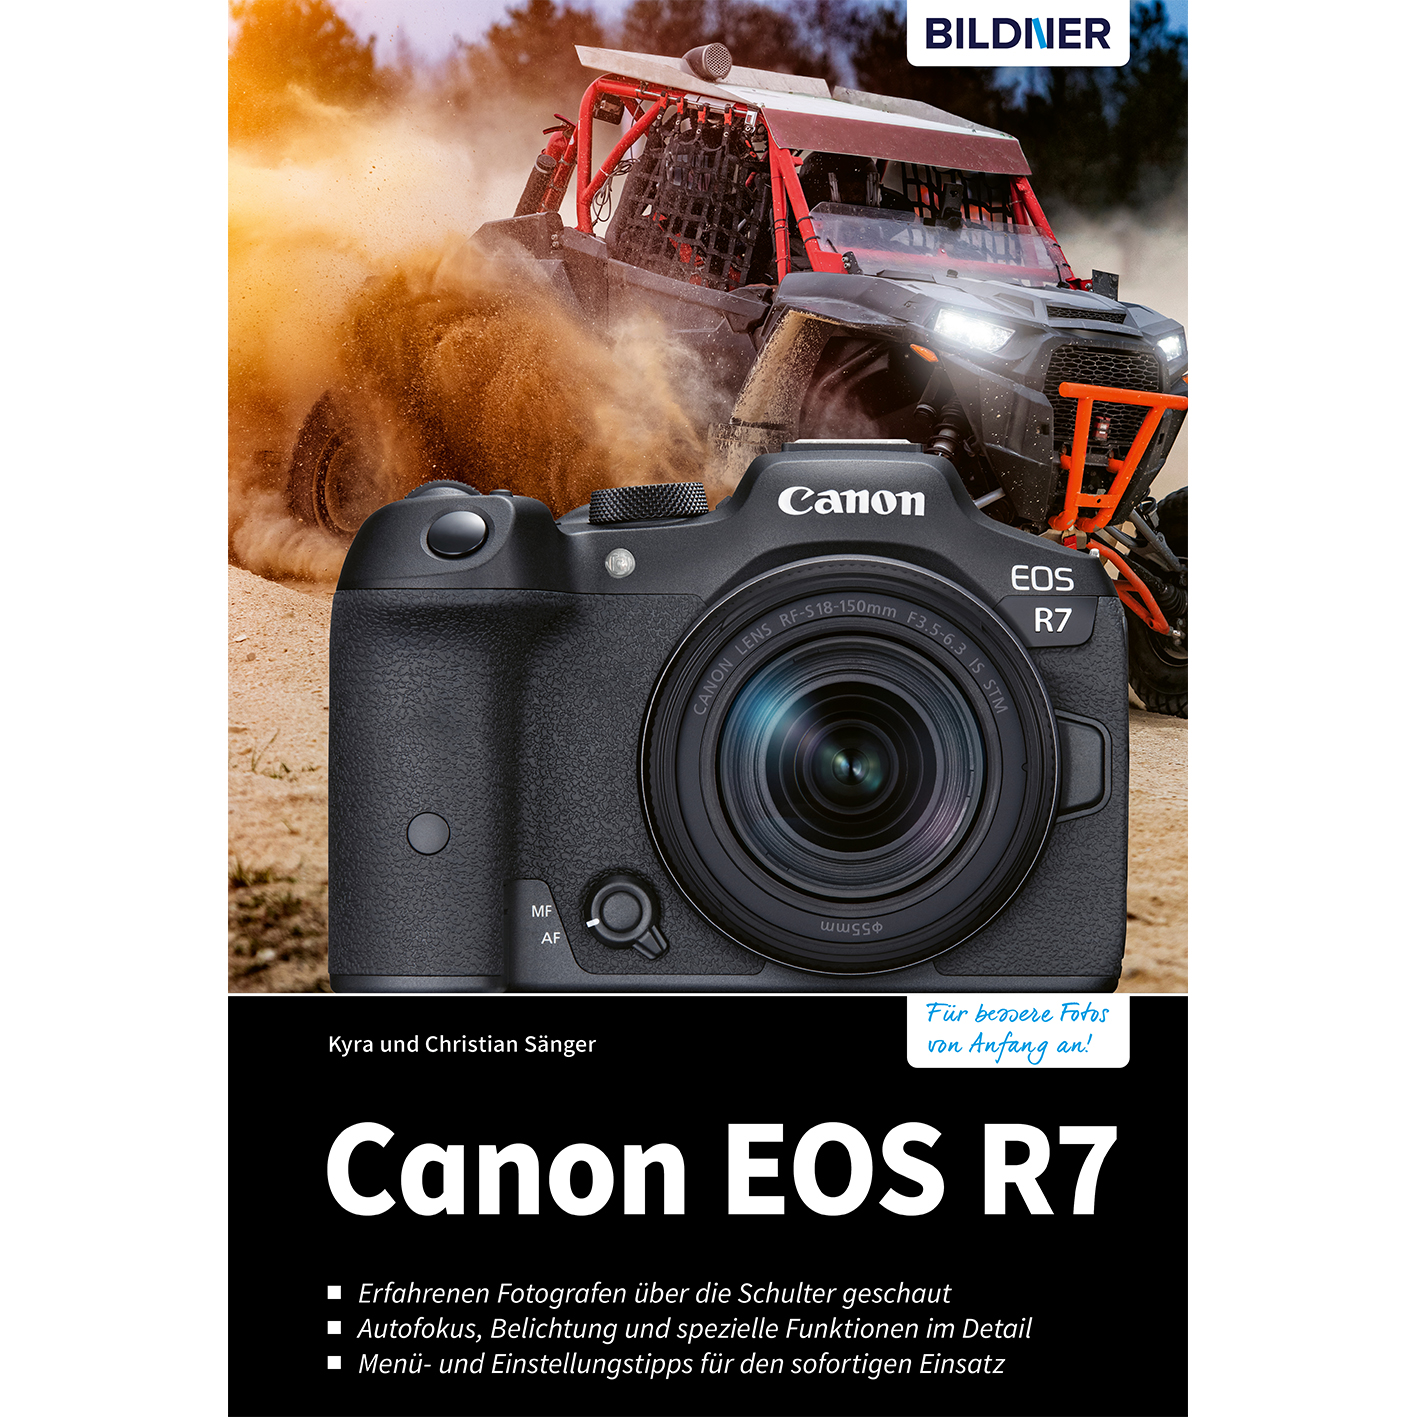 Canon EOS R7 zu umfangreiche Ihrer Kamera! - Praxisbuch Das